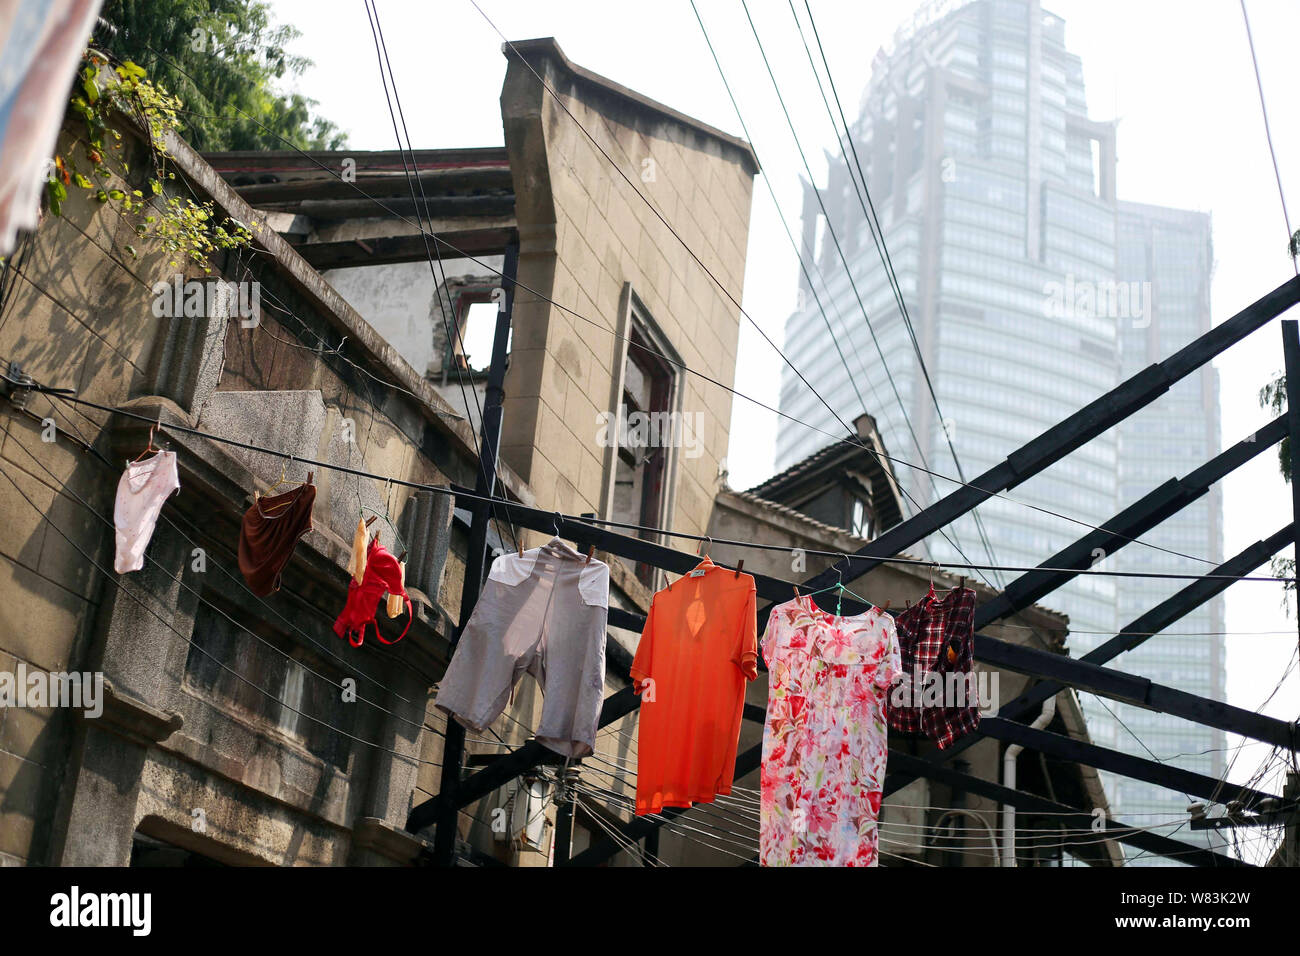 ------ Kleidung aufhängen an den Kabeln für die Trocknung über einen Weg zu einem Elendsviertel mit alten Häusern für den Wiederaufbau in Shanghai, China, 27 Ju demontiert werden Stockfoto